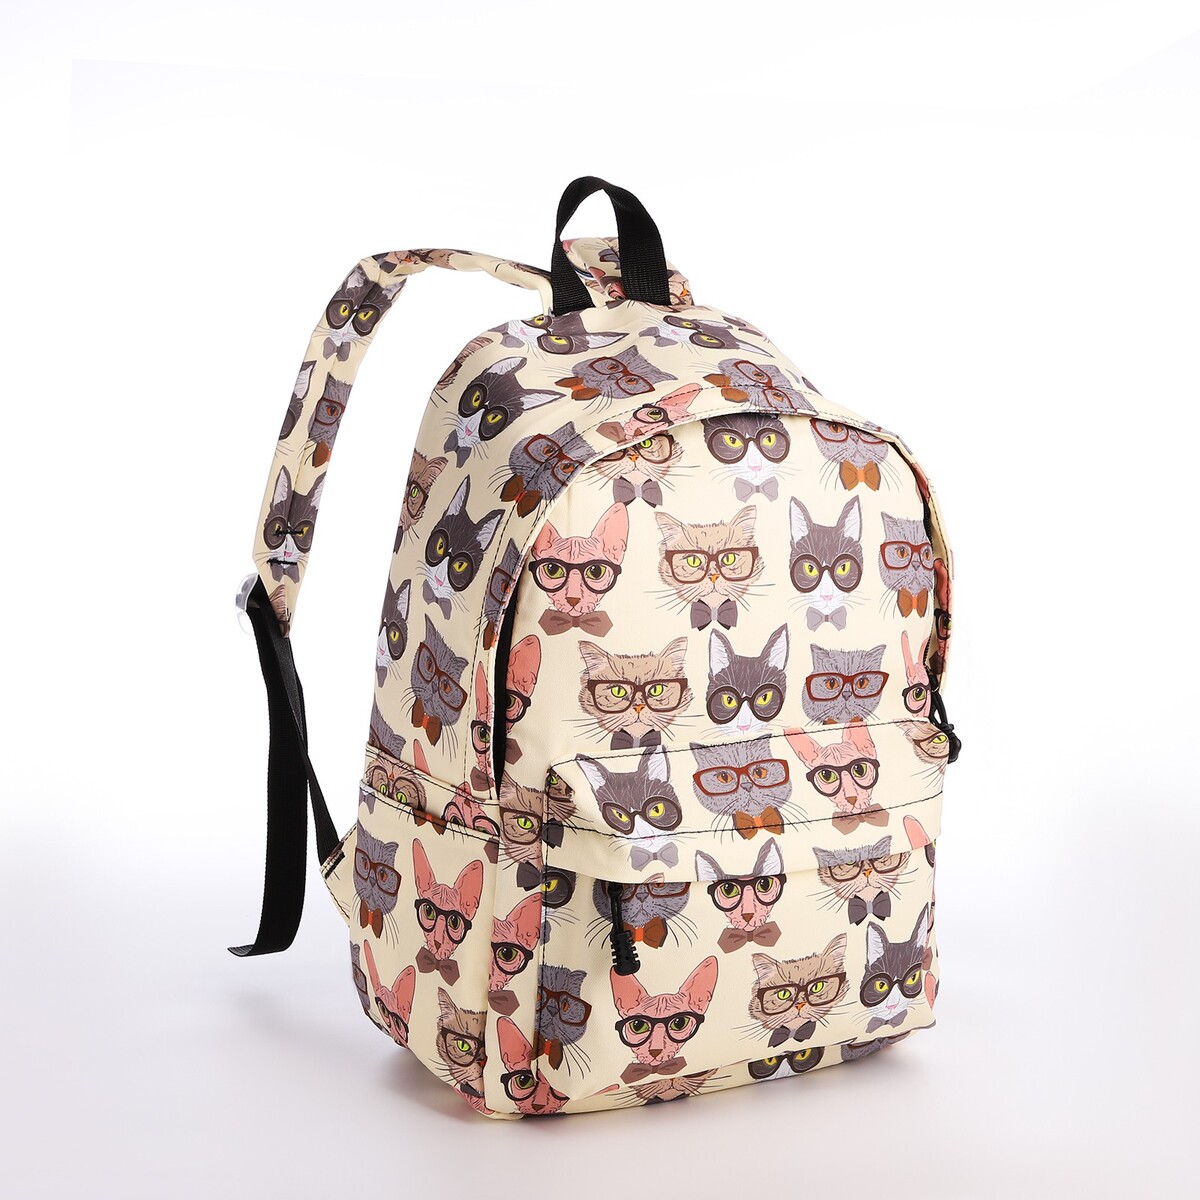 Рюкзак школьный из текстиля на молнии, 4 кармана, кошелек, цвет бежевый рюкзак школьный из текстиля 3 кармана белый бежевый